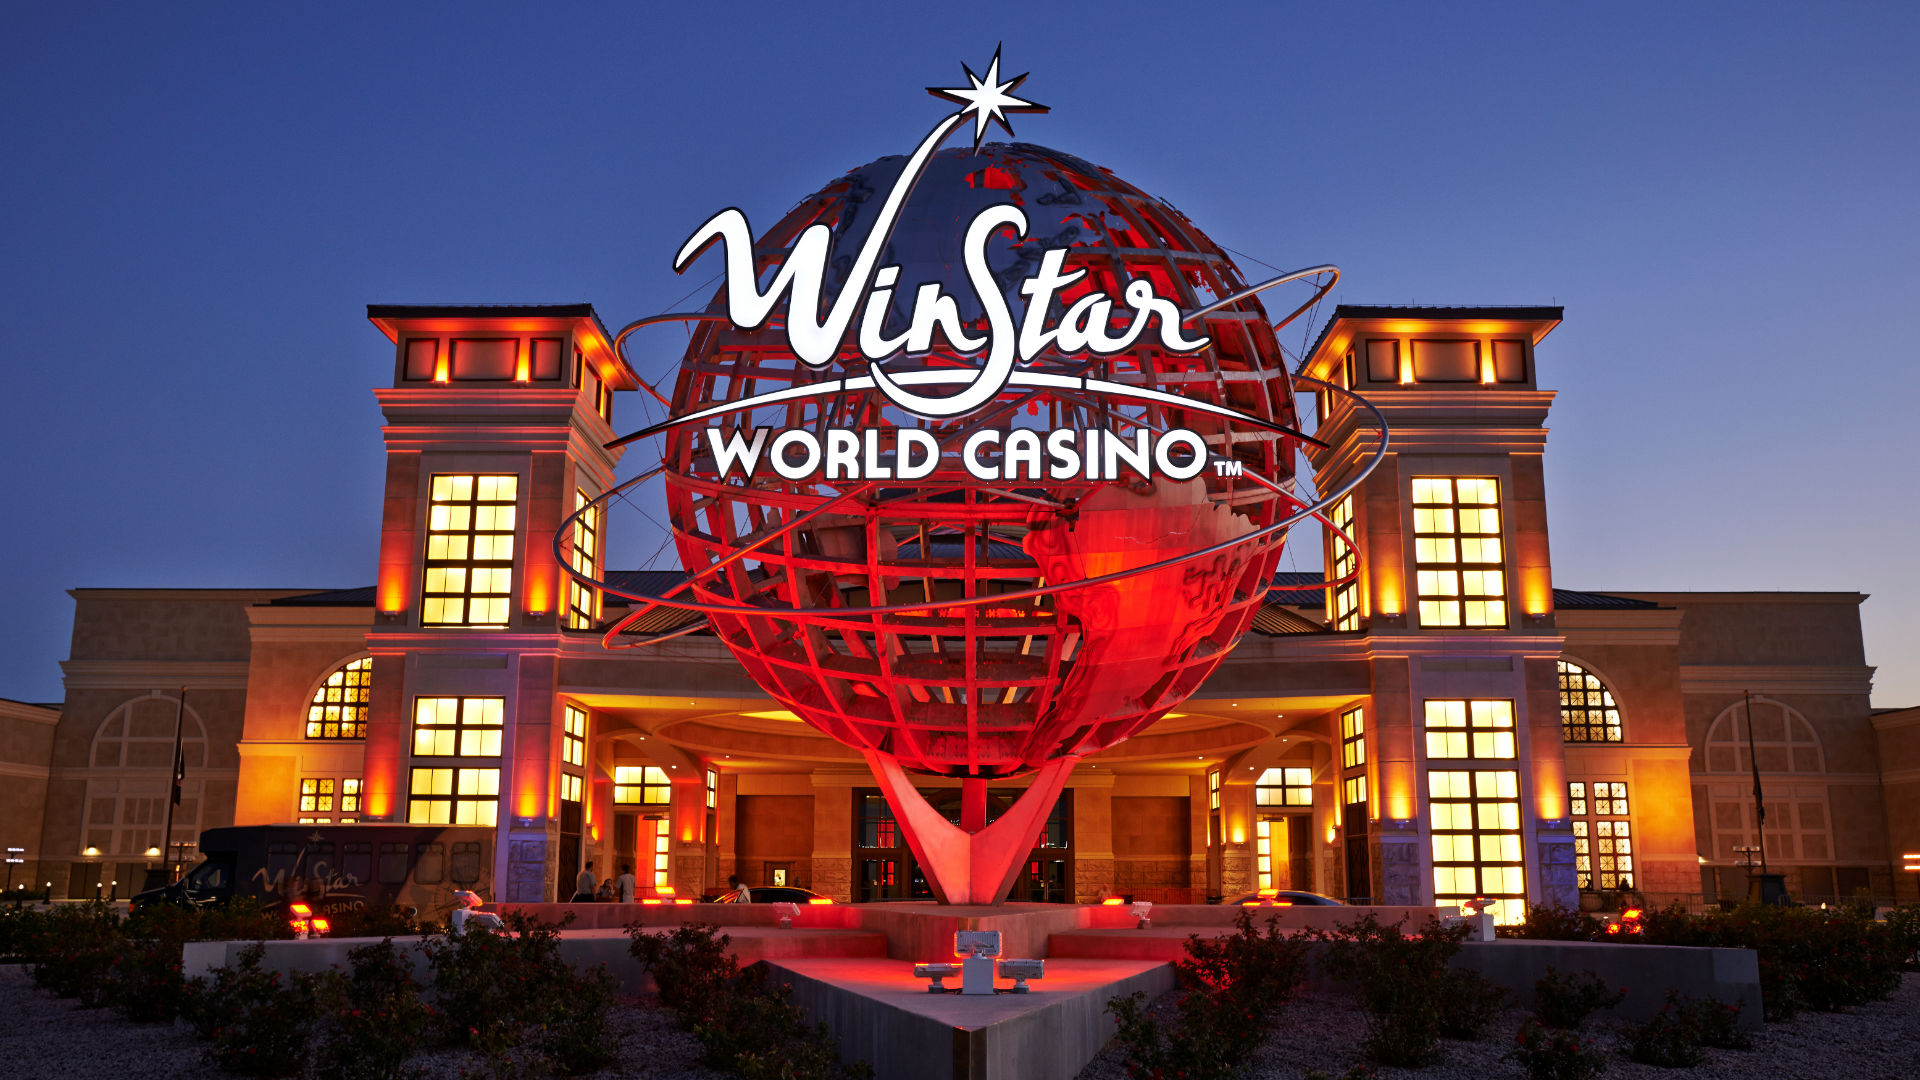 Super 8 motel close to Winstar Casino